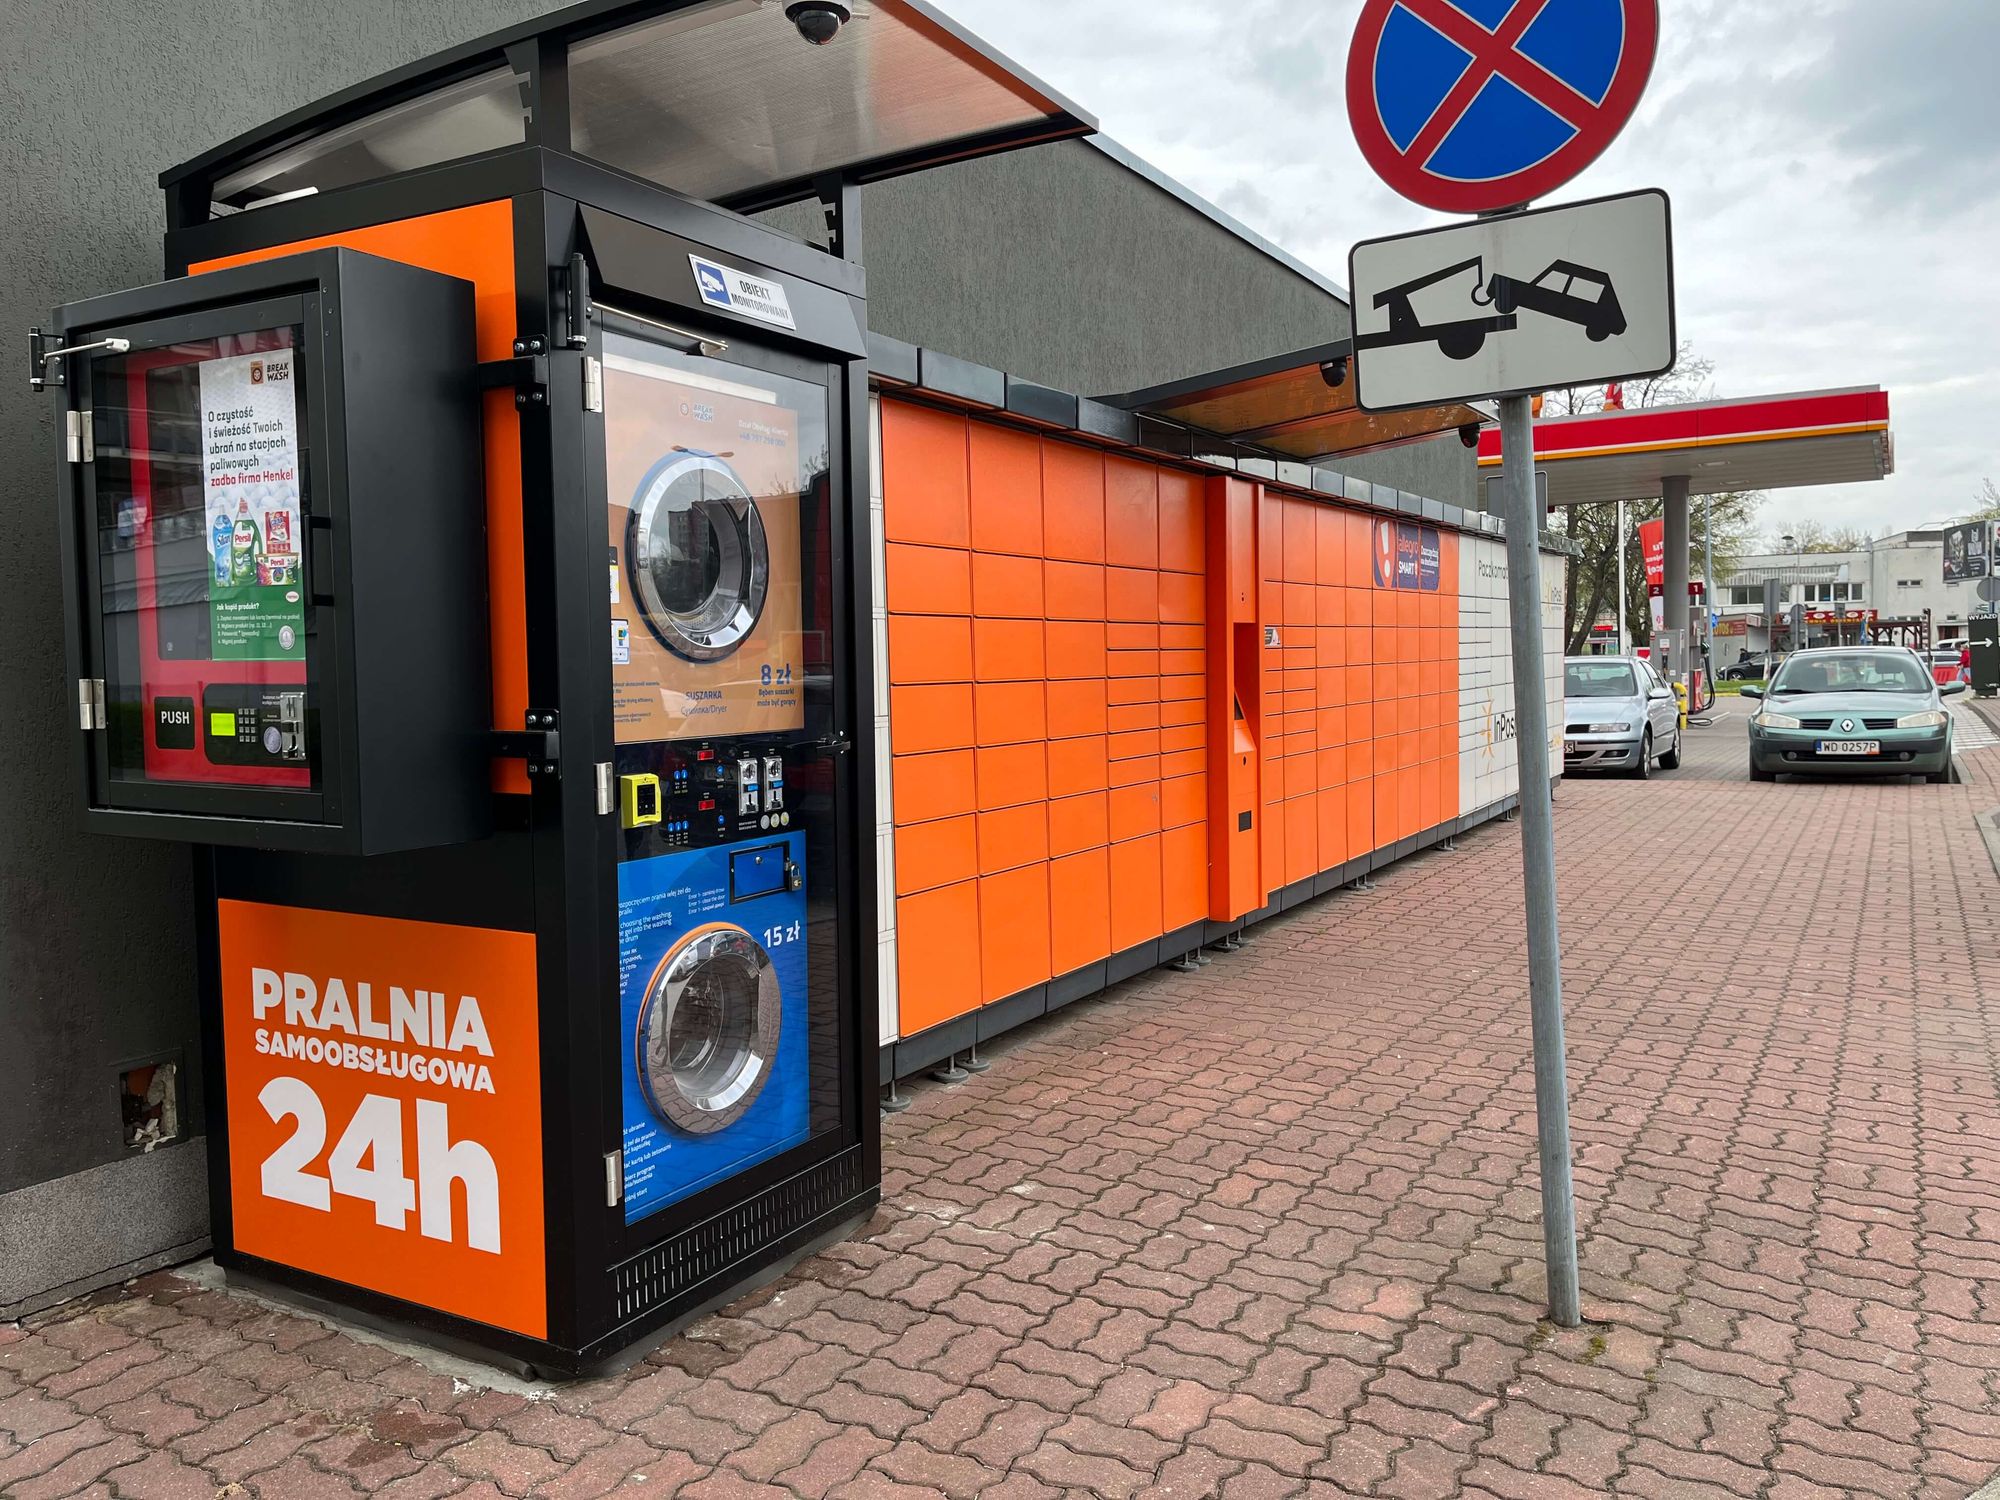 Вендинговый автомат Break&Wash – стирально-сушильные машины в формате самообслуживания, которые устанавливают на АЗС и в сервисных зонах на автомагистралях по всей Польше